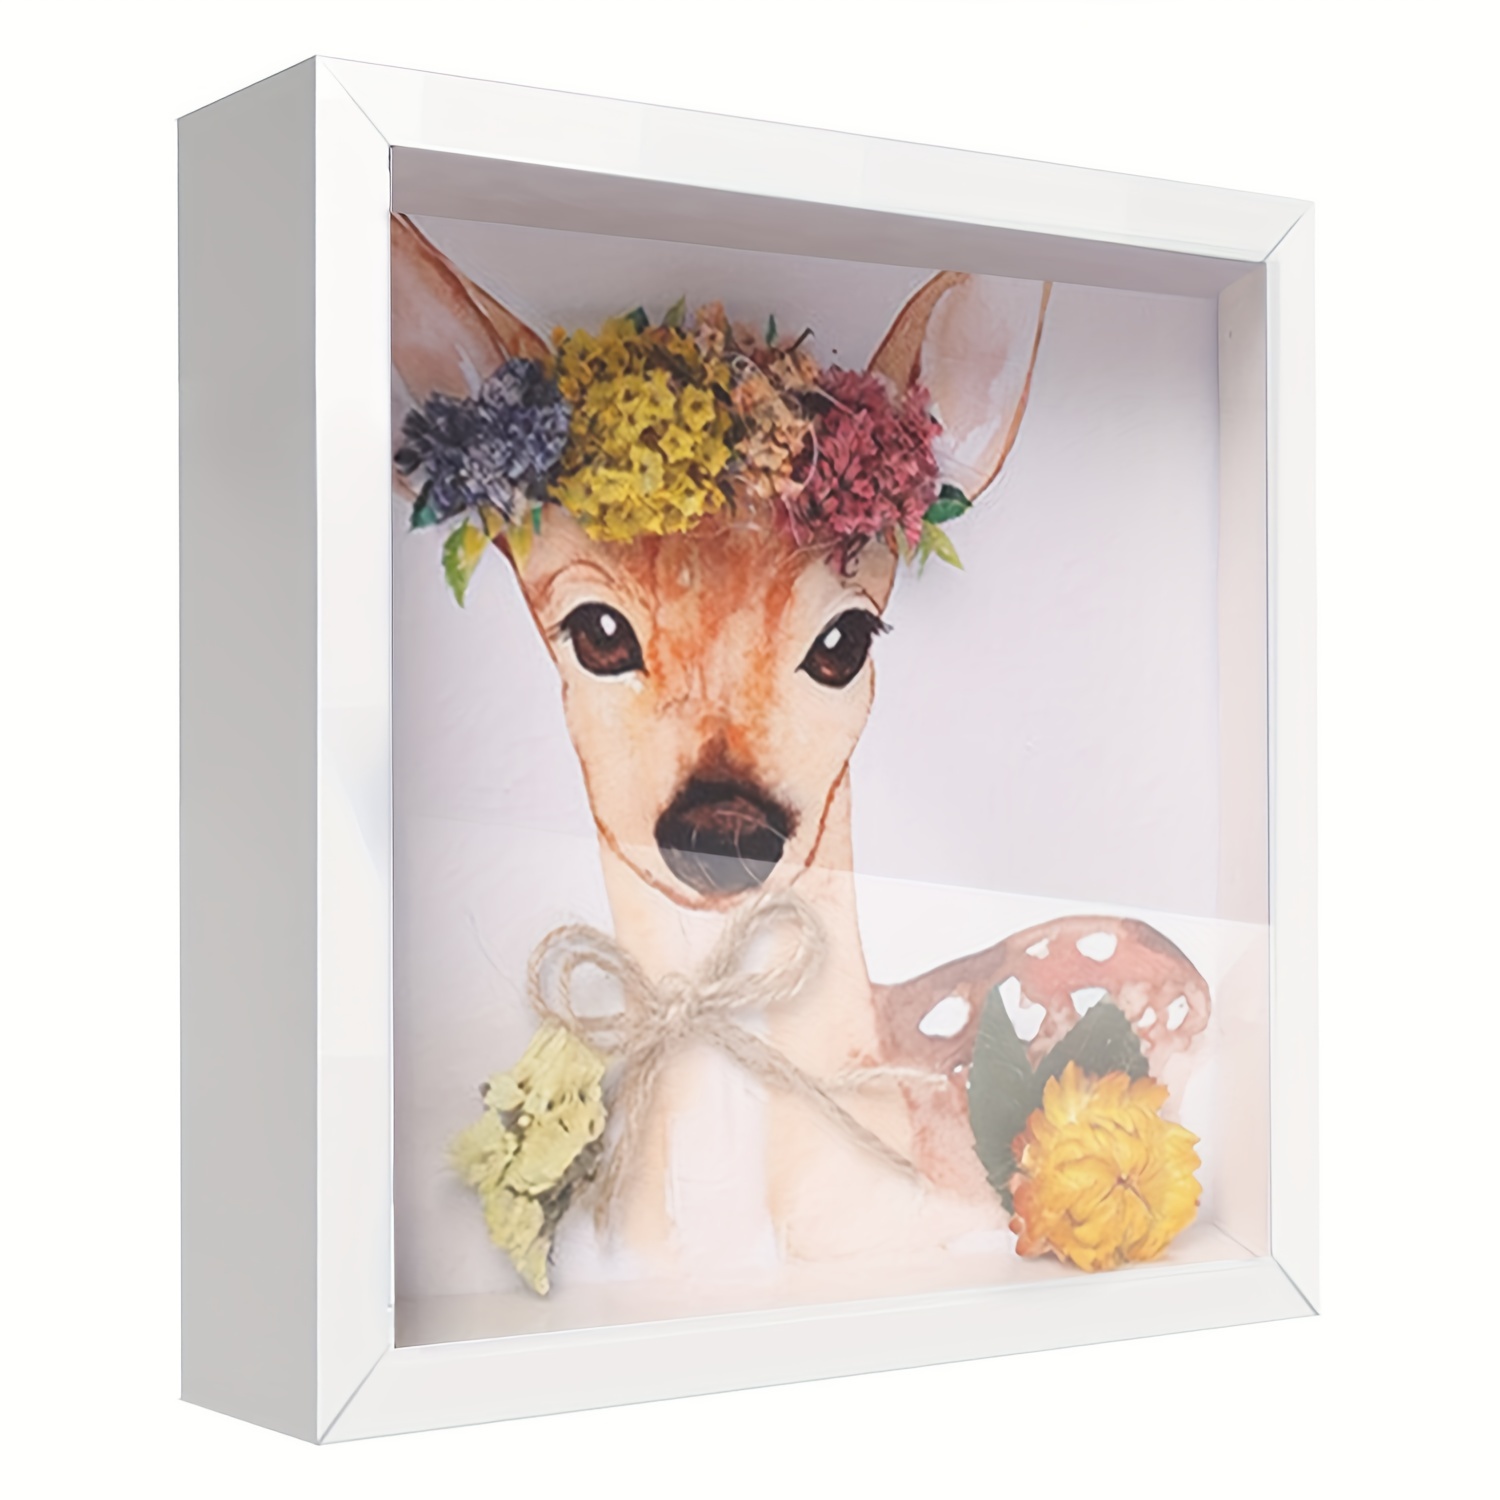  Marco de fotos 3D profundidad hueco 1.6 in para flores de  bricolaje, artesanías, caja de marco para memorabilia/exhibición favorita :  Arte y Manualidades